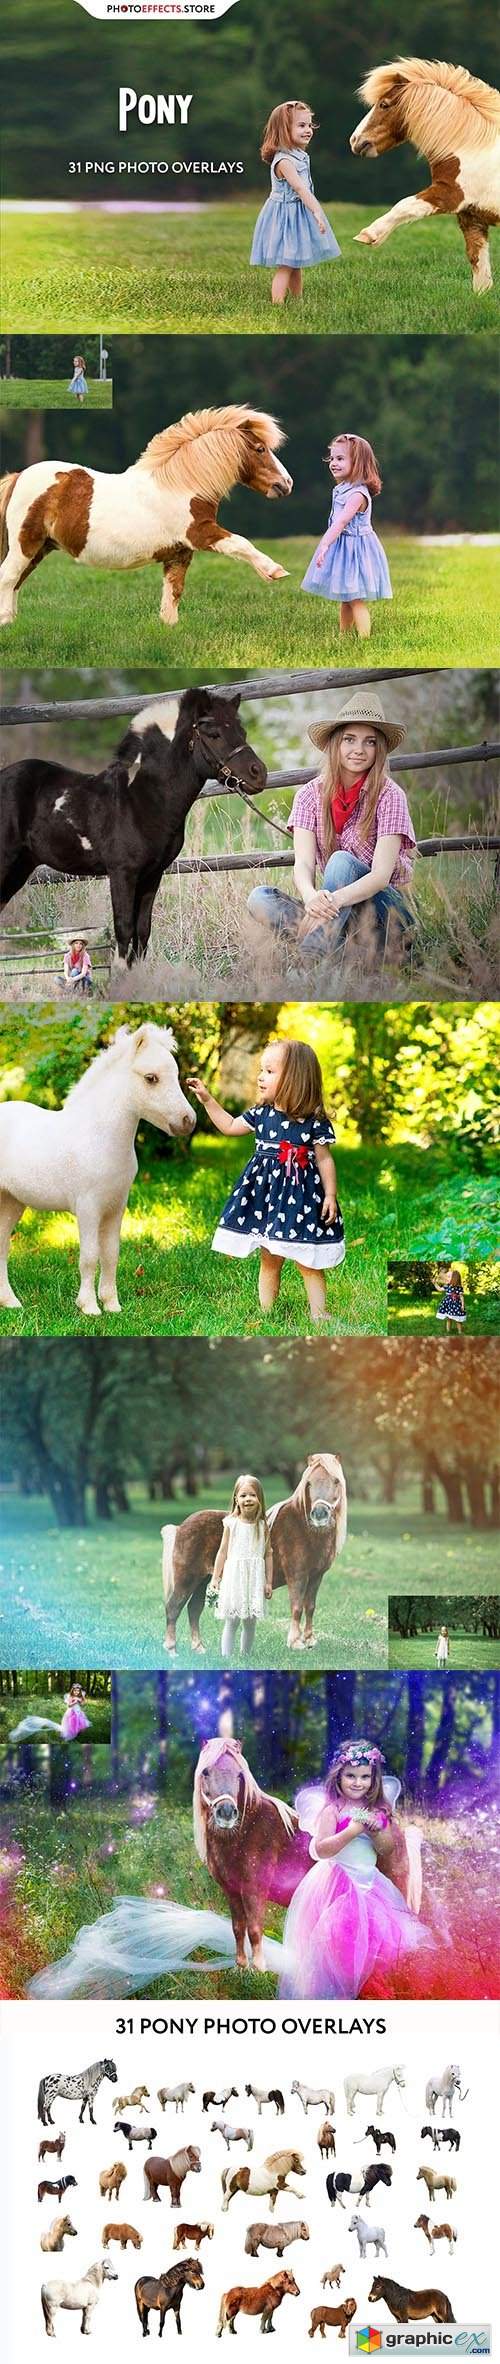 31 Pony Photo Overlays 